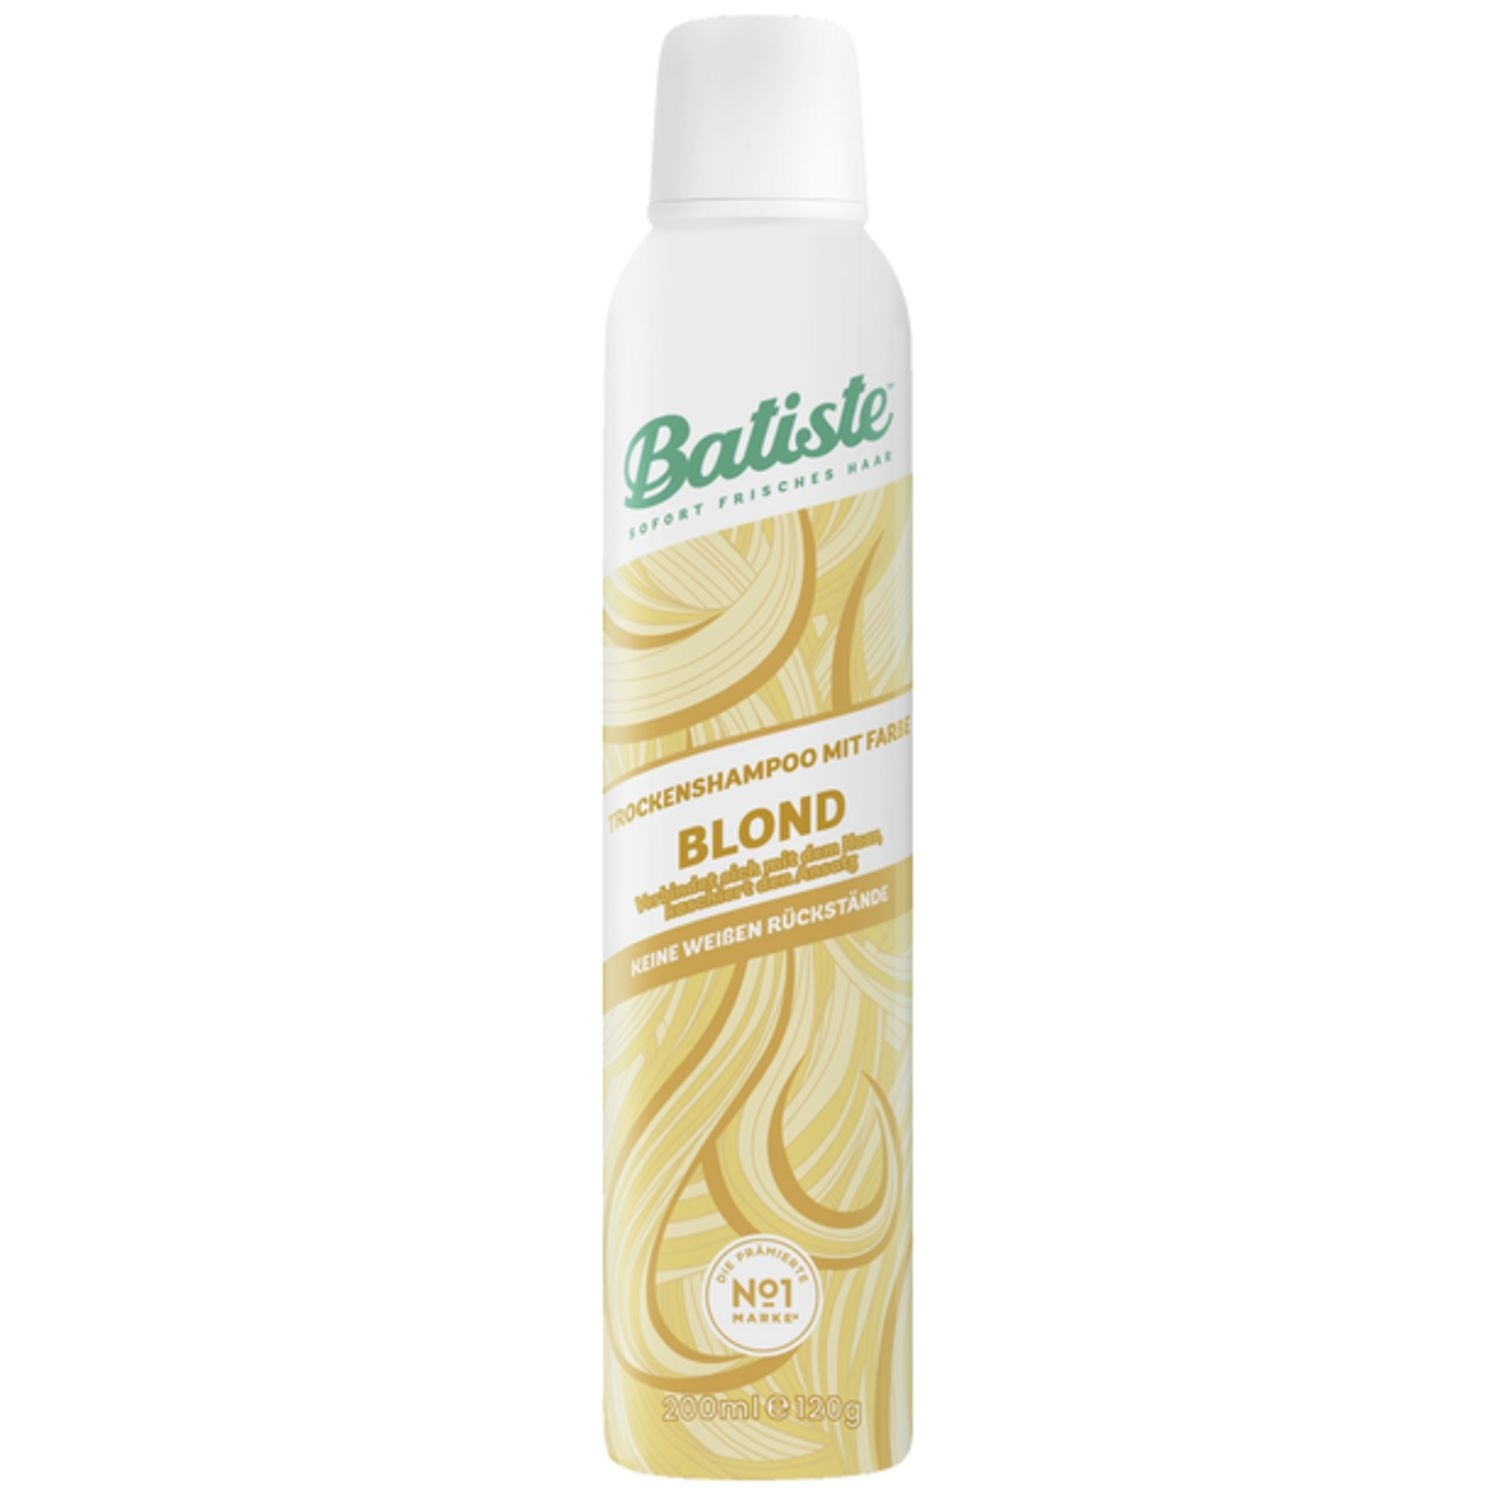 Batiste Light & Dry Shampoo ml. from